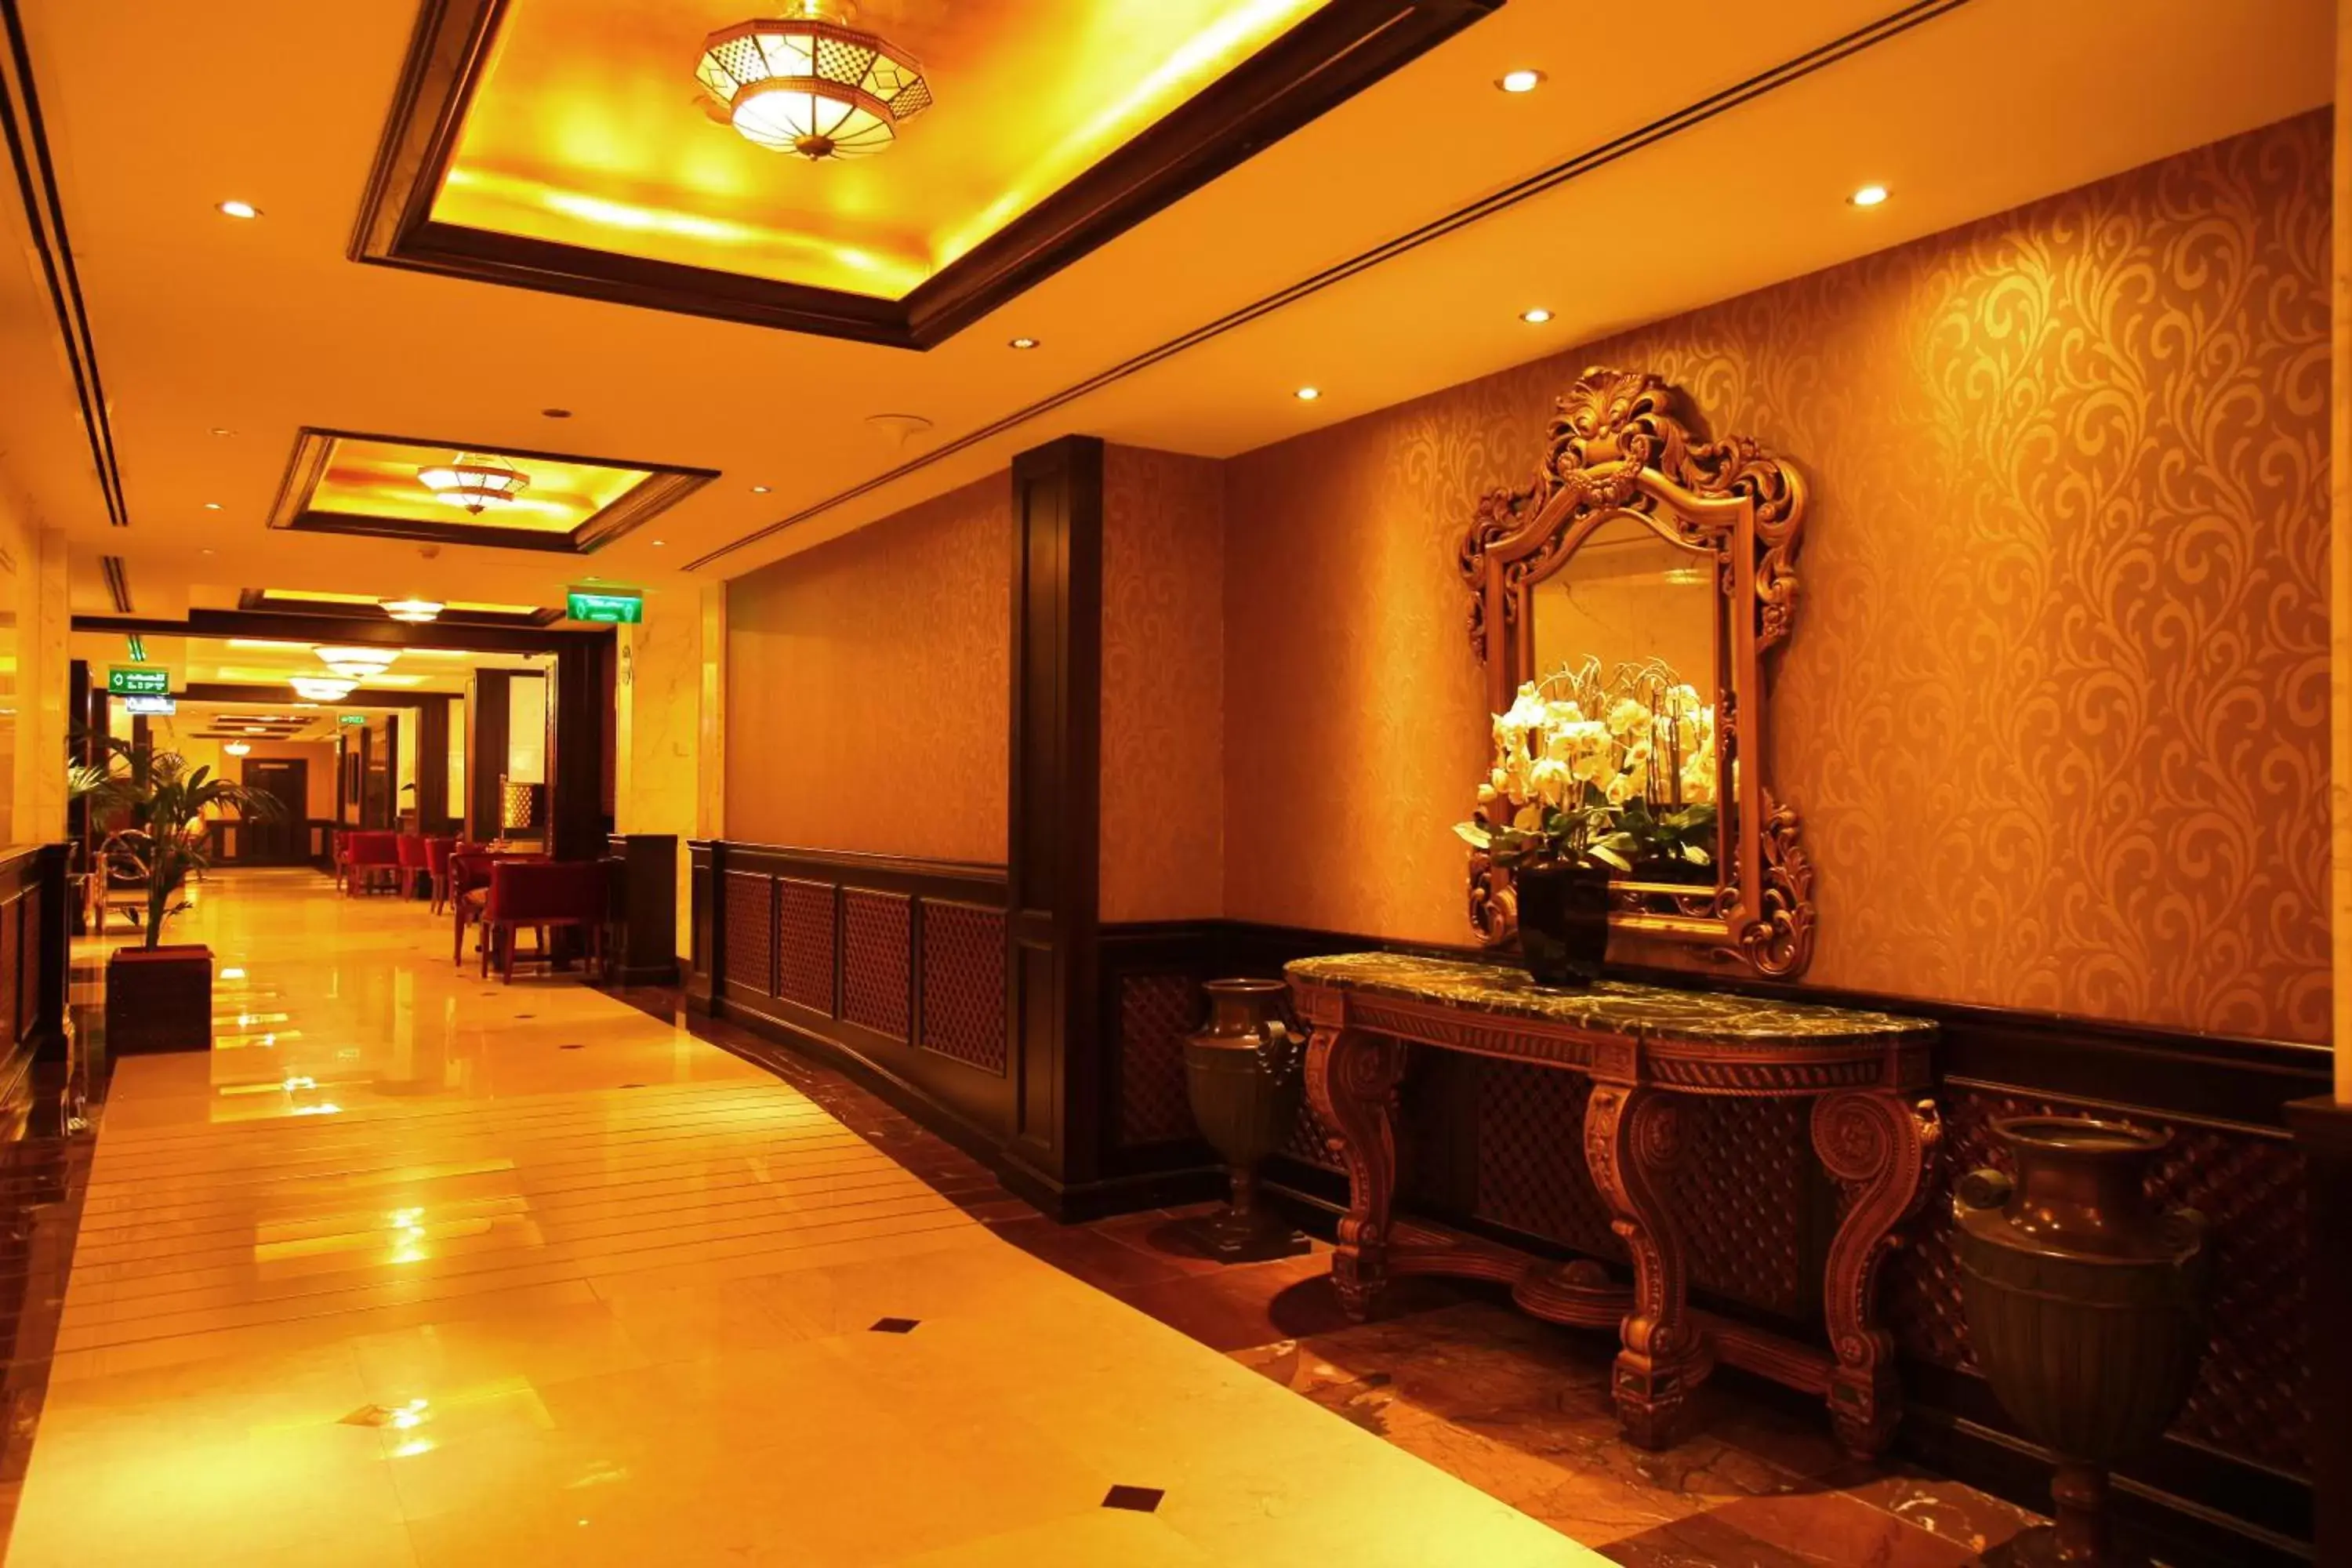 Lobby or reception, Lobby/Reception in Arabian Courtyard Hotel & Spa